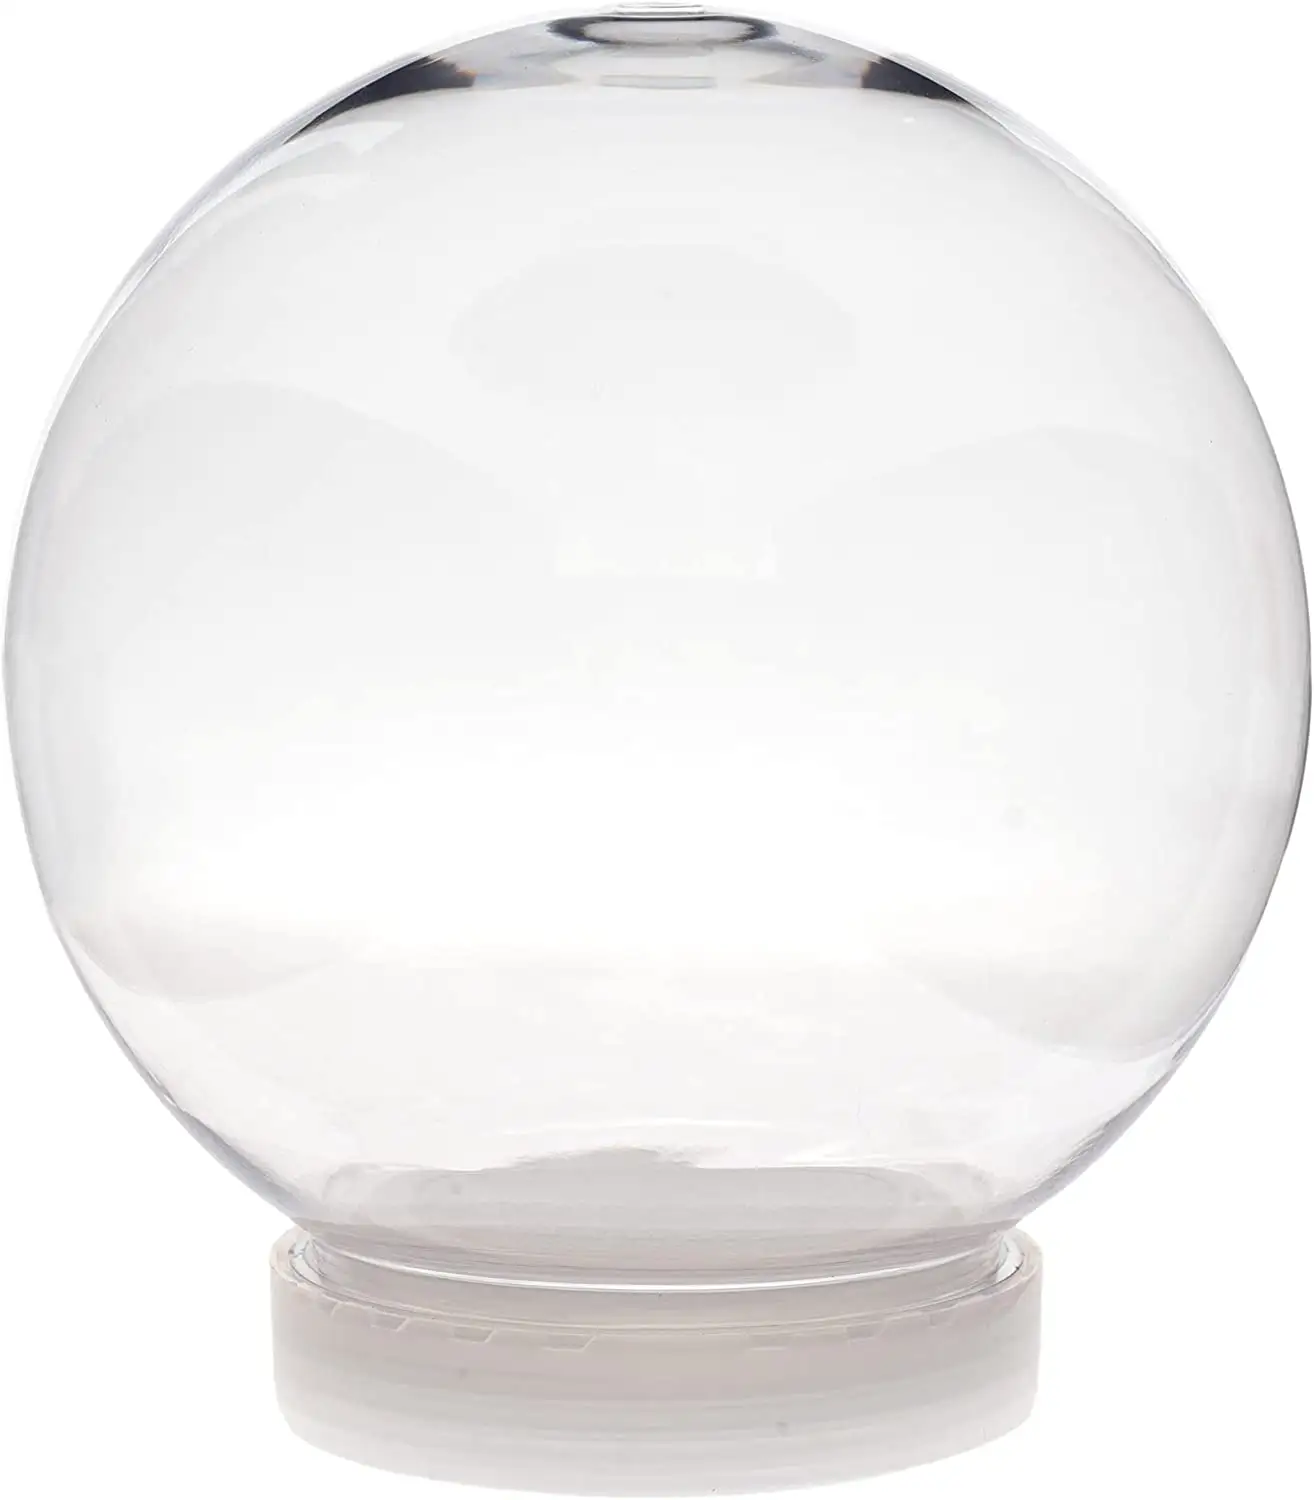 Globe à neige en plastique transparent, idéal pour les travaux manuels